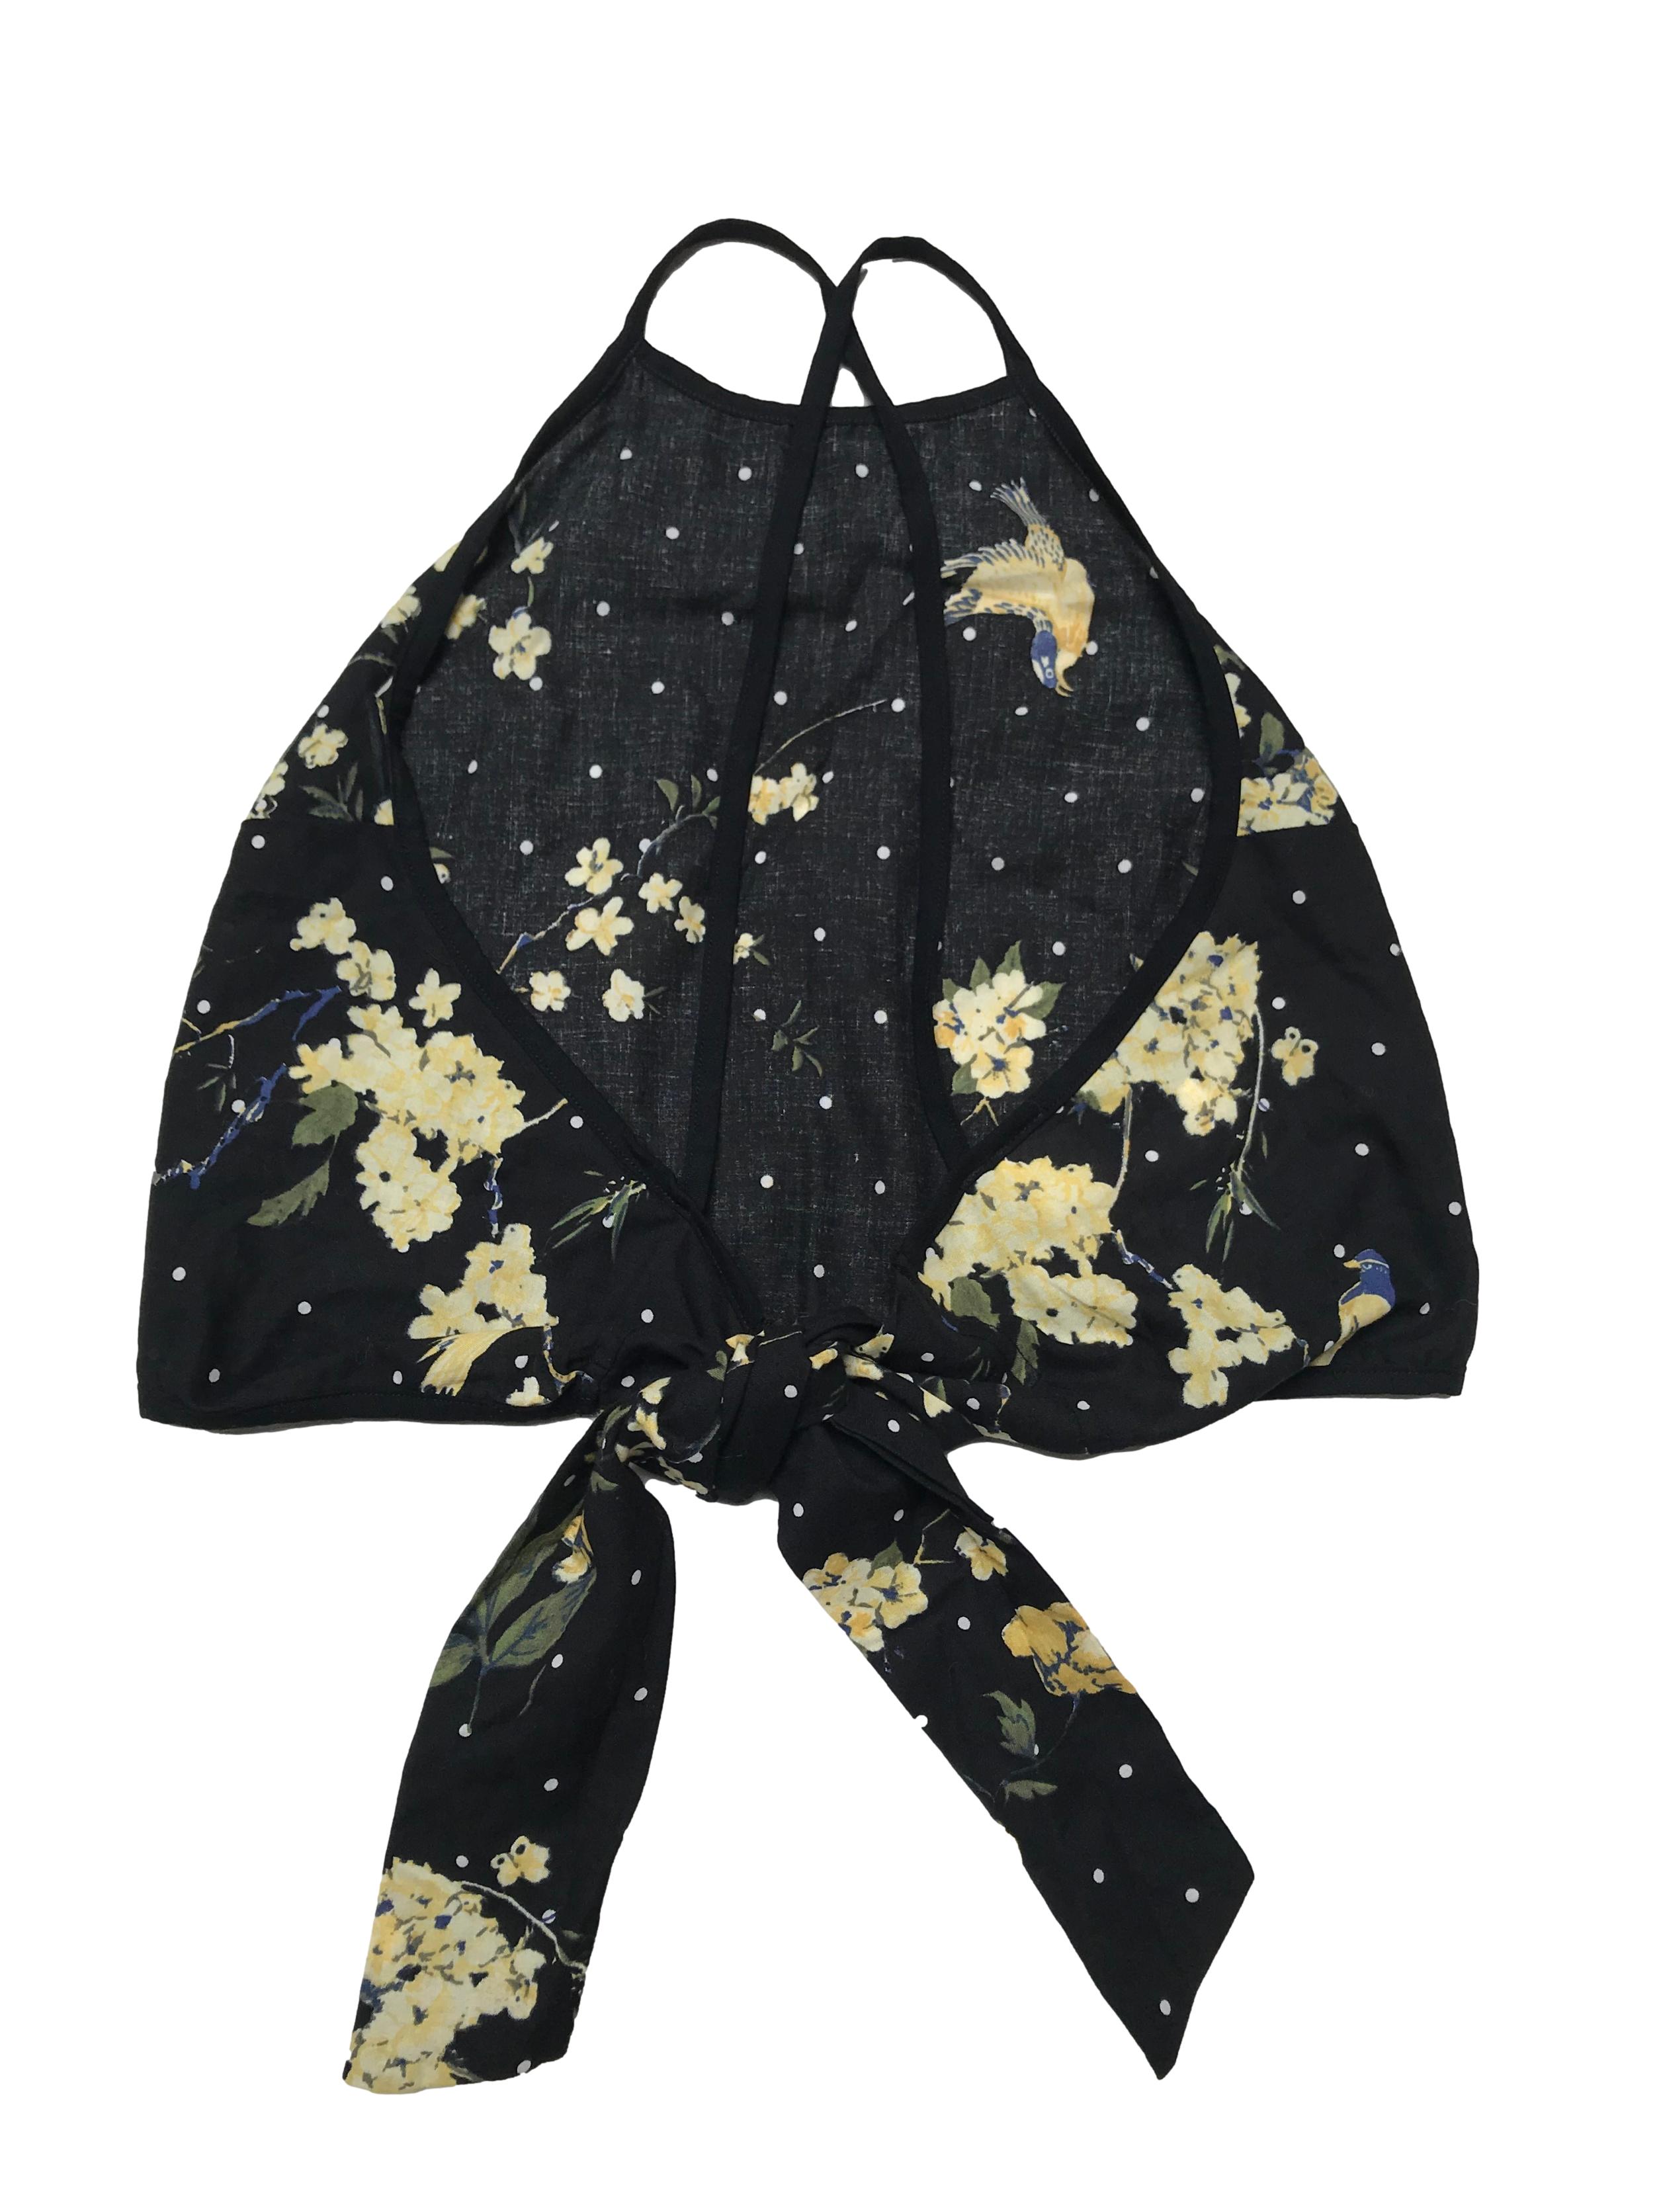 Top Ibella Ama negro con estampado de lunares y flores, tiritas cruzadas y se amarra en la espalda. Precio orignal S/ 80